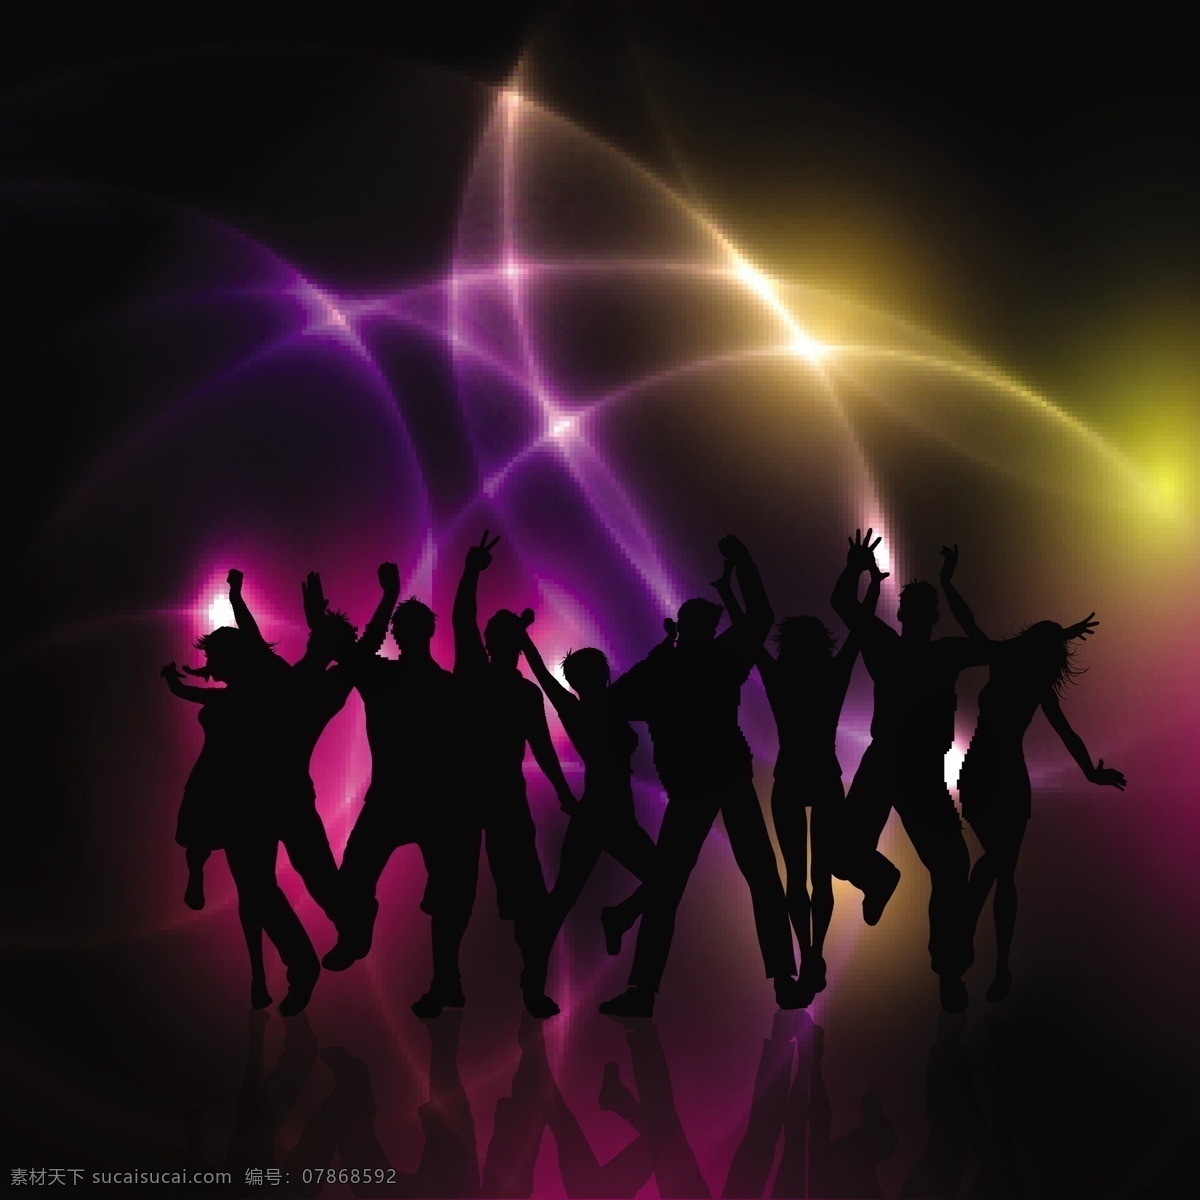 党人 silhouetes 背景 音乐 人 党的人 舞蹈的剪影 朋友 庆典 迪斯科 男孩 音乐会 人群 组 音乐背景 人物剪影 插图 跳舞 女人剪影 黑色